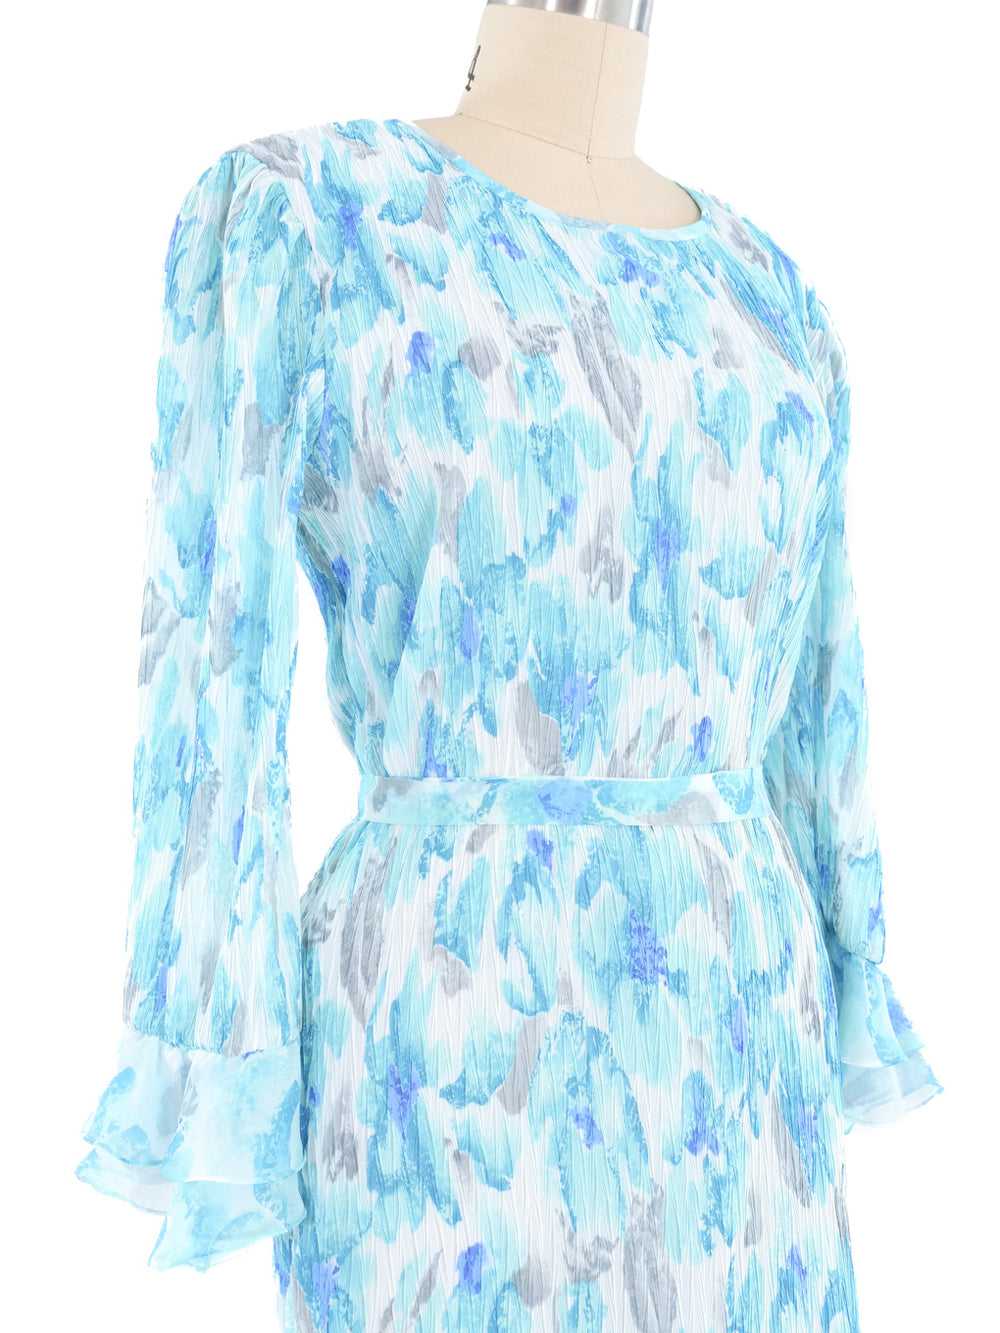 Turquoise Pleated Ruffle Dress - image 2